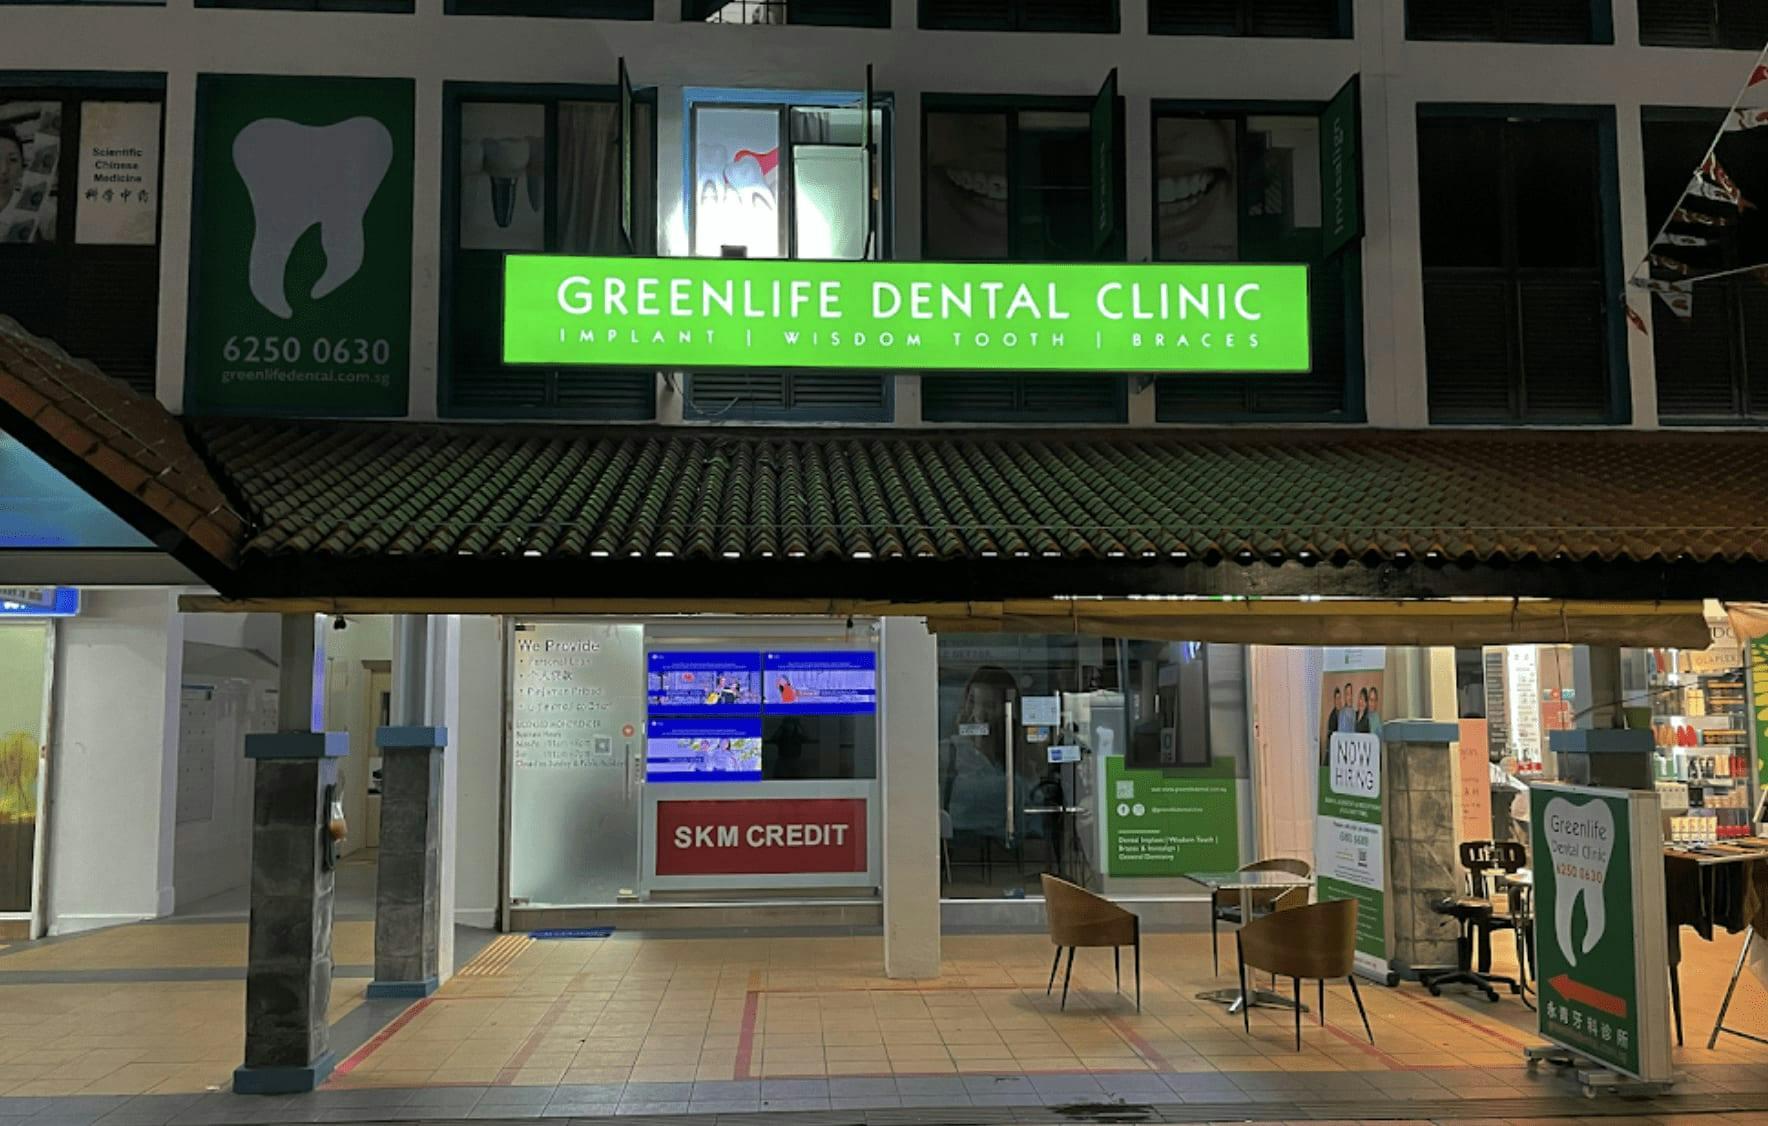 Greenlife Dental Clinic - Toa Payoh